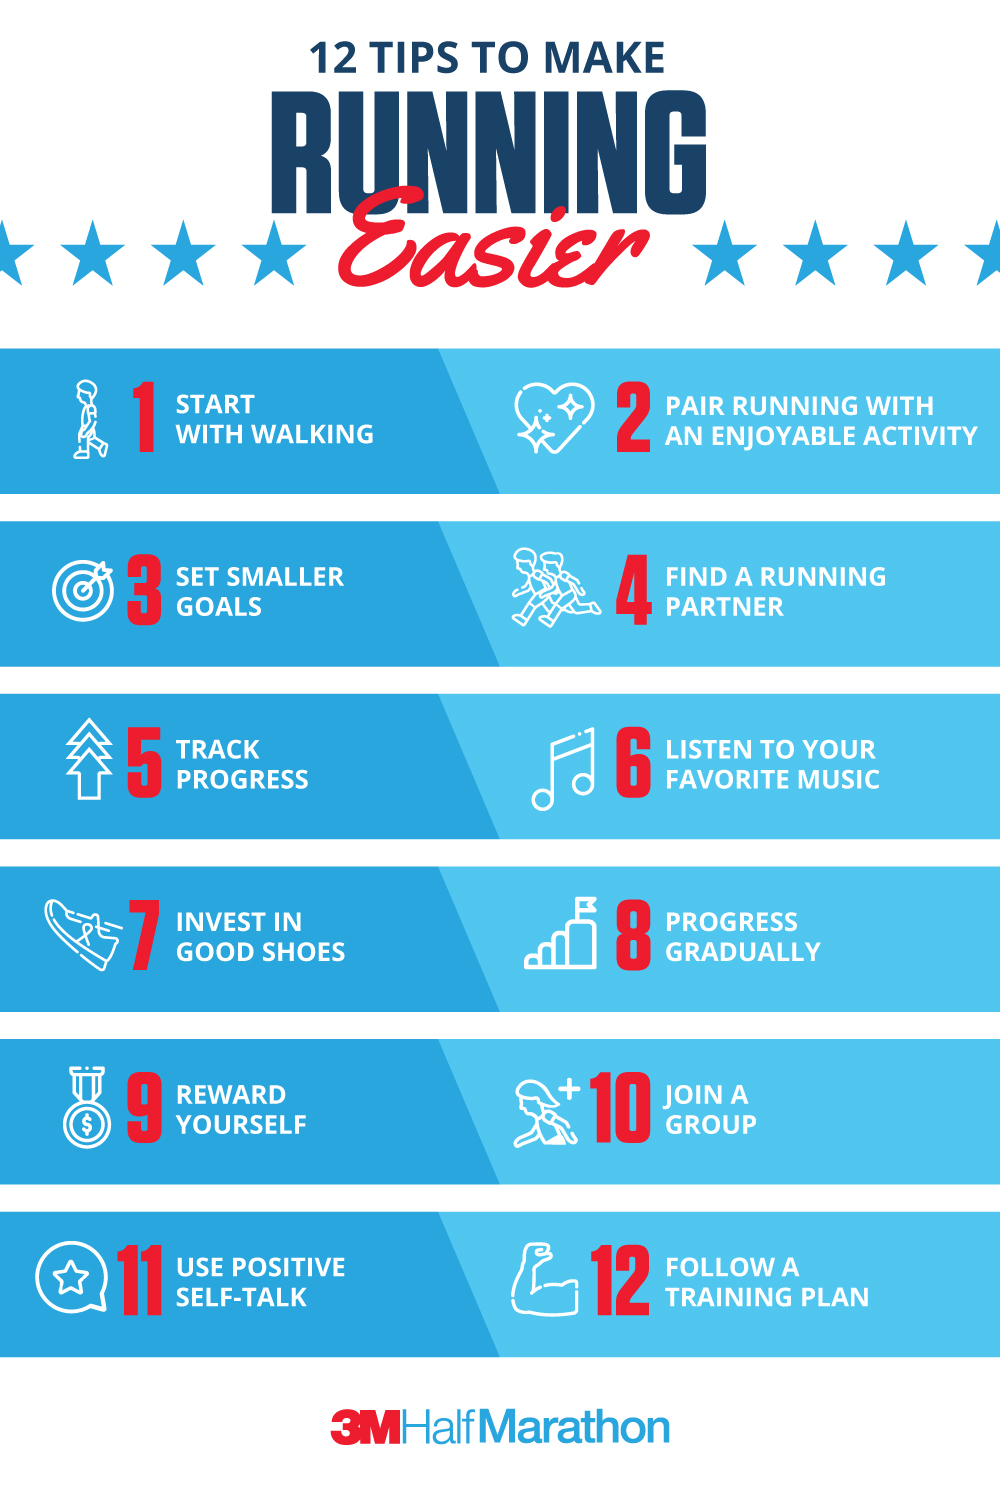 How to Start Running >> 8 Tips for Beginners